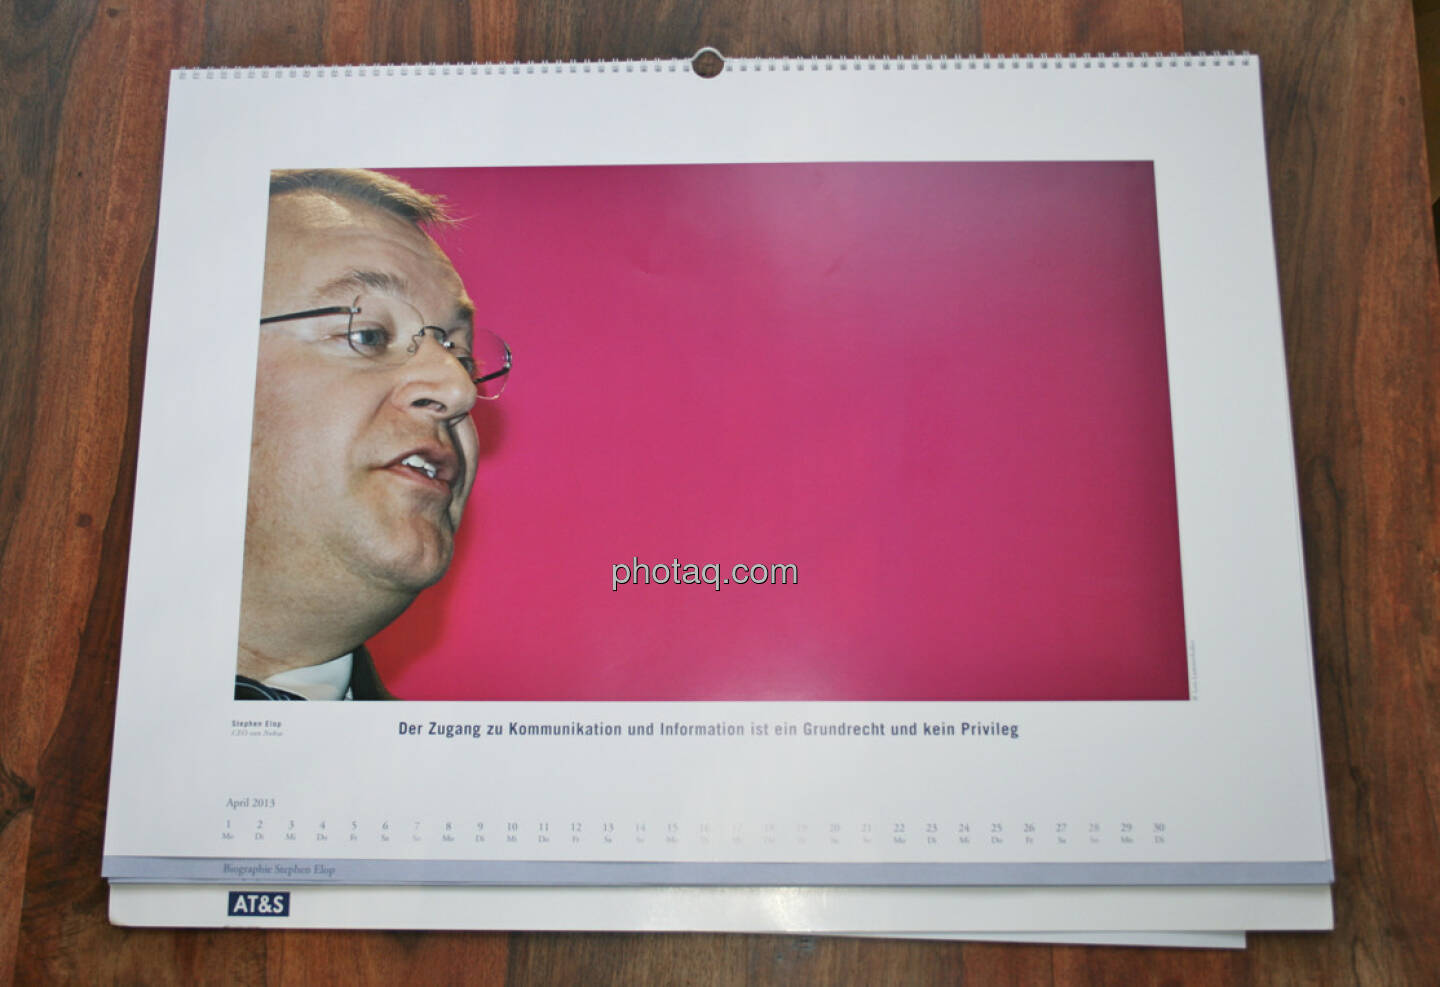 Stephen Elop, CEO von Nokia Der Zugang zu Kommunikation und Information ist ein Grundrecht und kein Privileg... aus dem AT&S-Kalender 2013, konzipiert und koordiniert von Martin Theyer